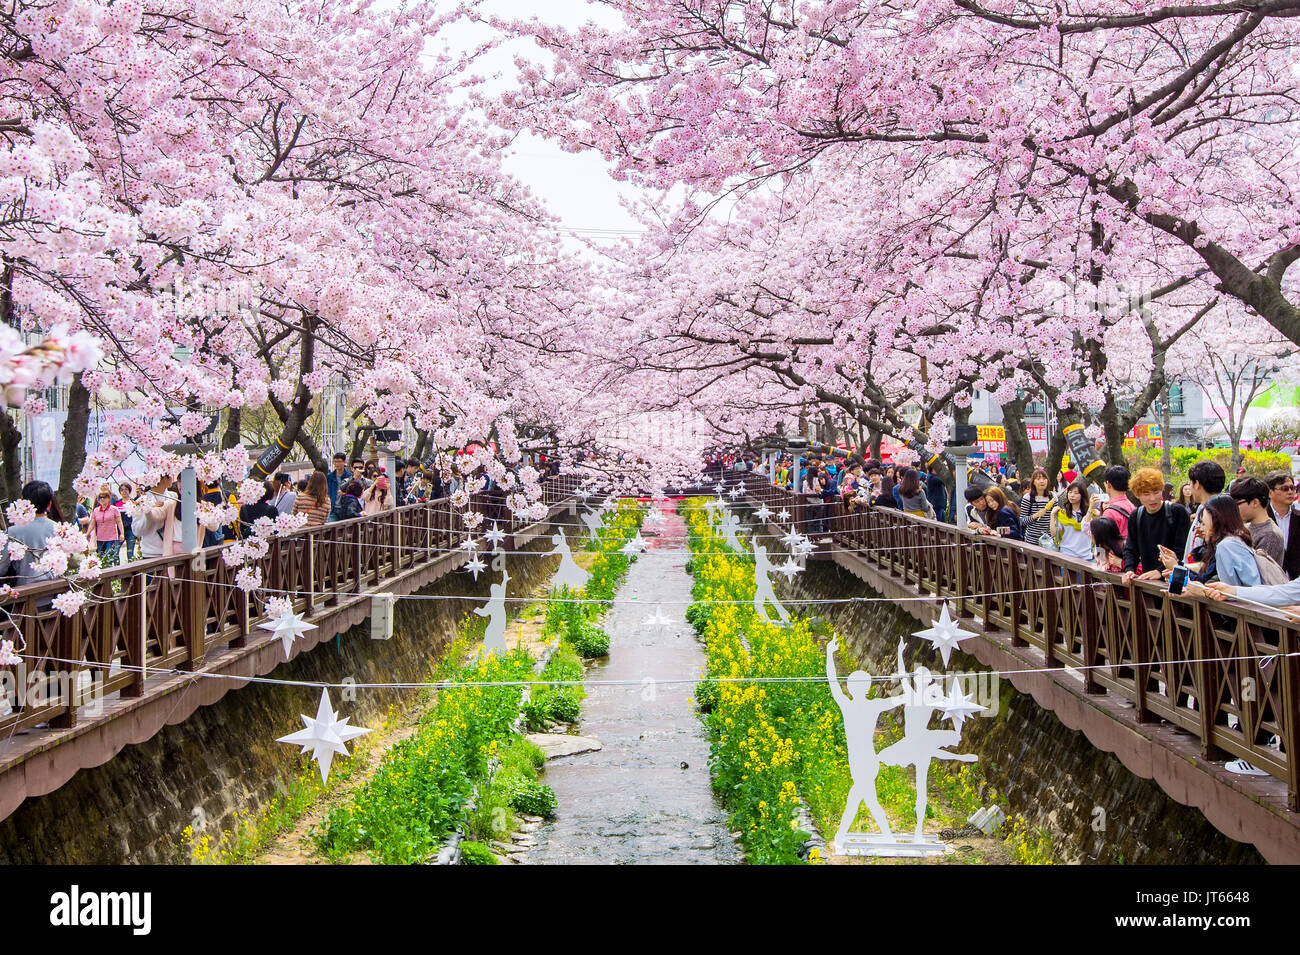 JINHAE, CORÉE - 2 avril : Jinhae Gunhangje Festival est le plus grand festival des cerisiers en fleur en Corée.Les touristes prenaient des photos de la beauté des paysages aro Banque D'Images